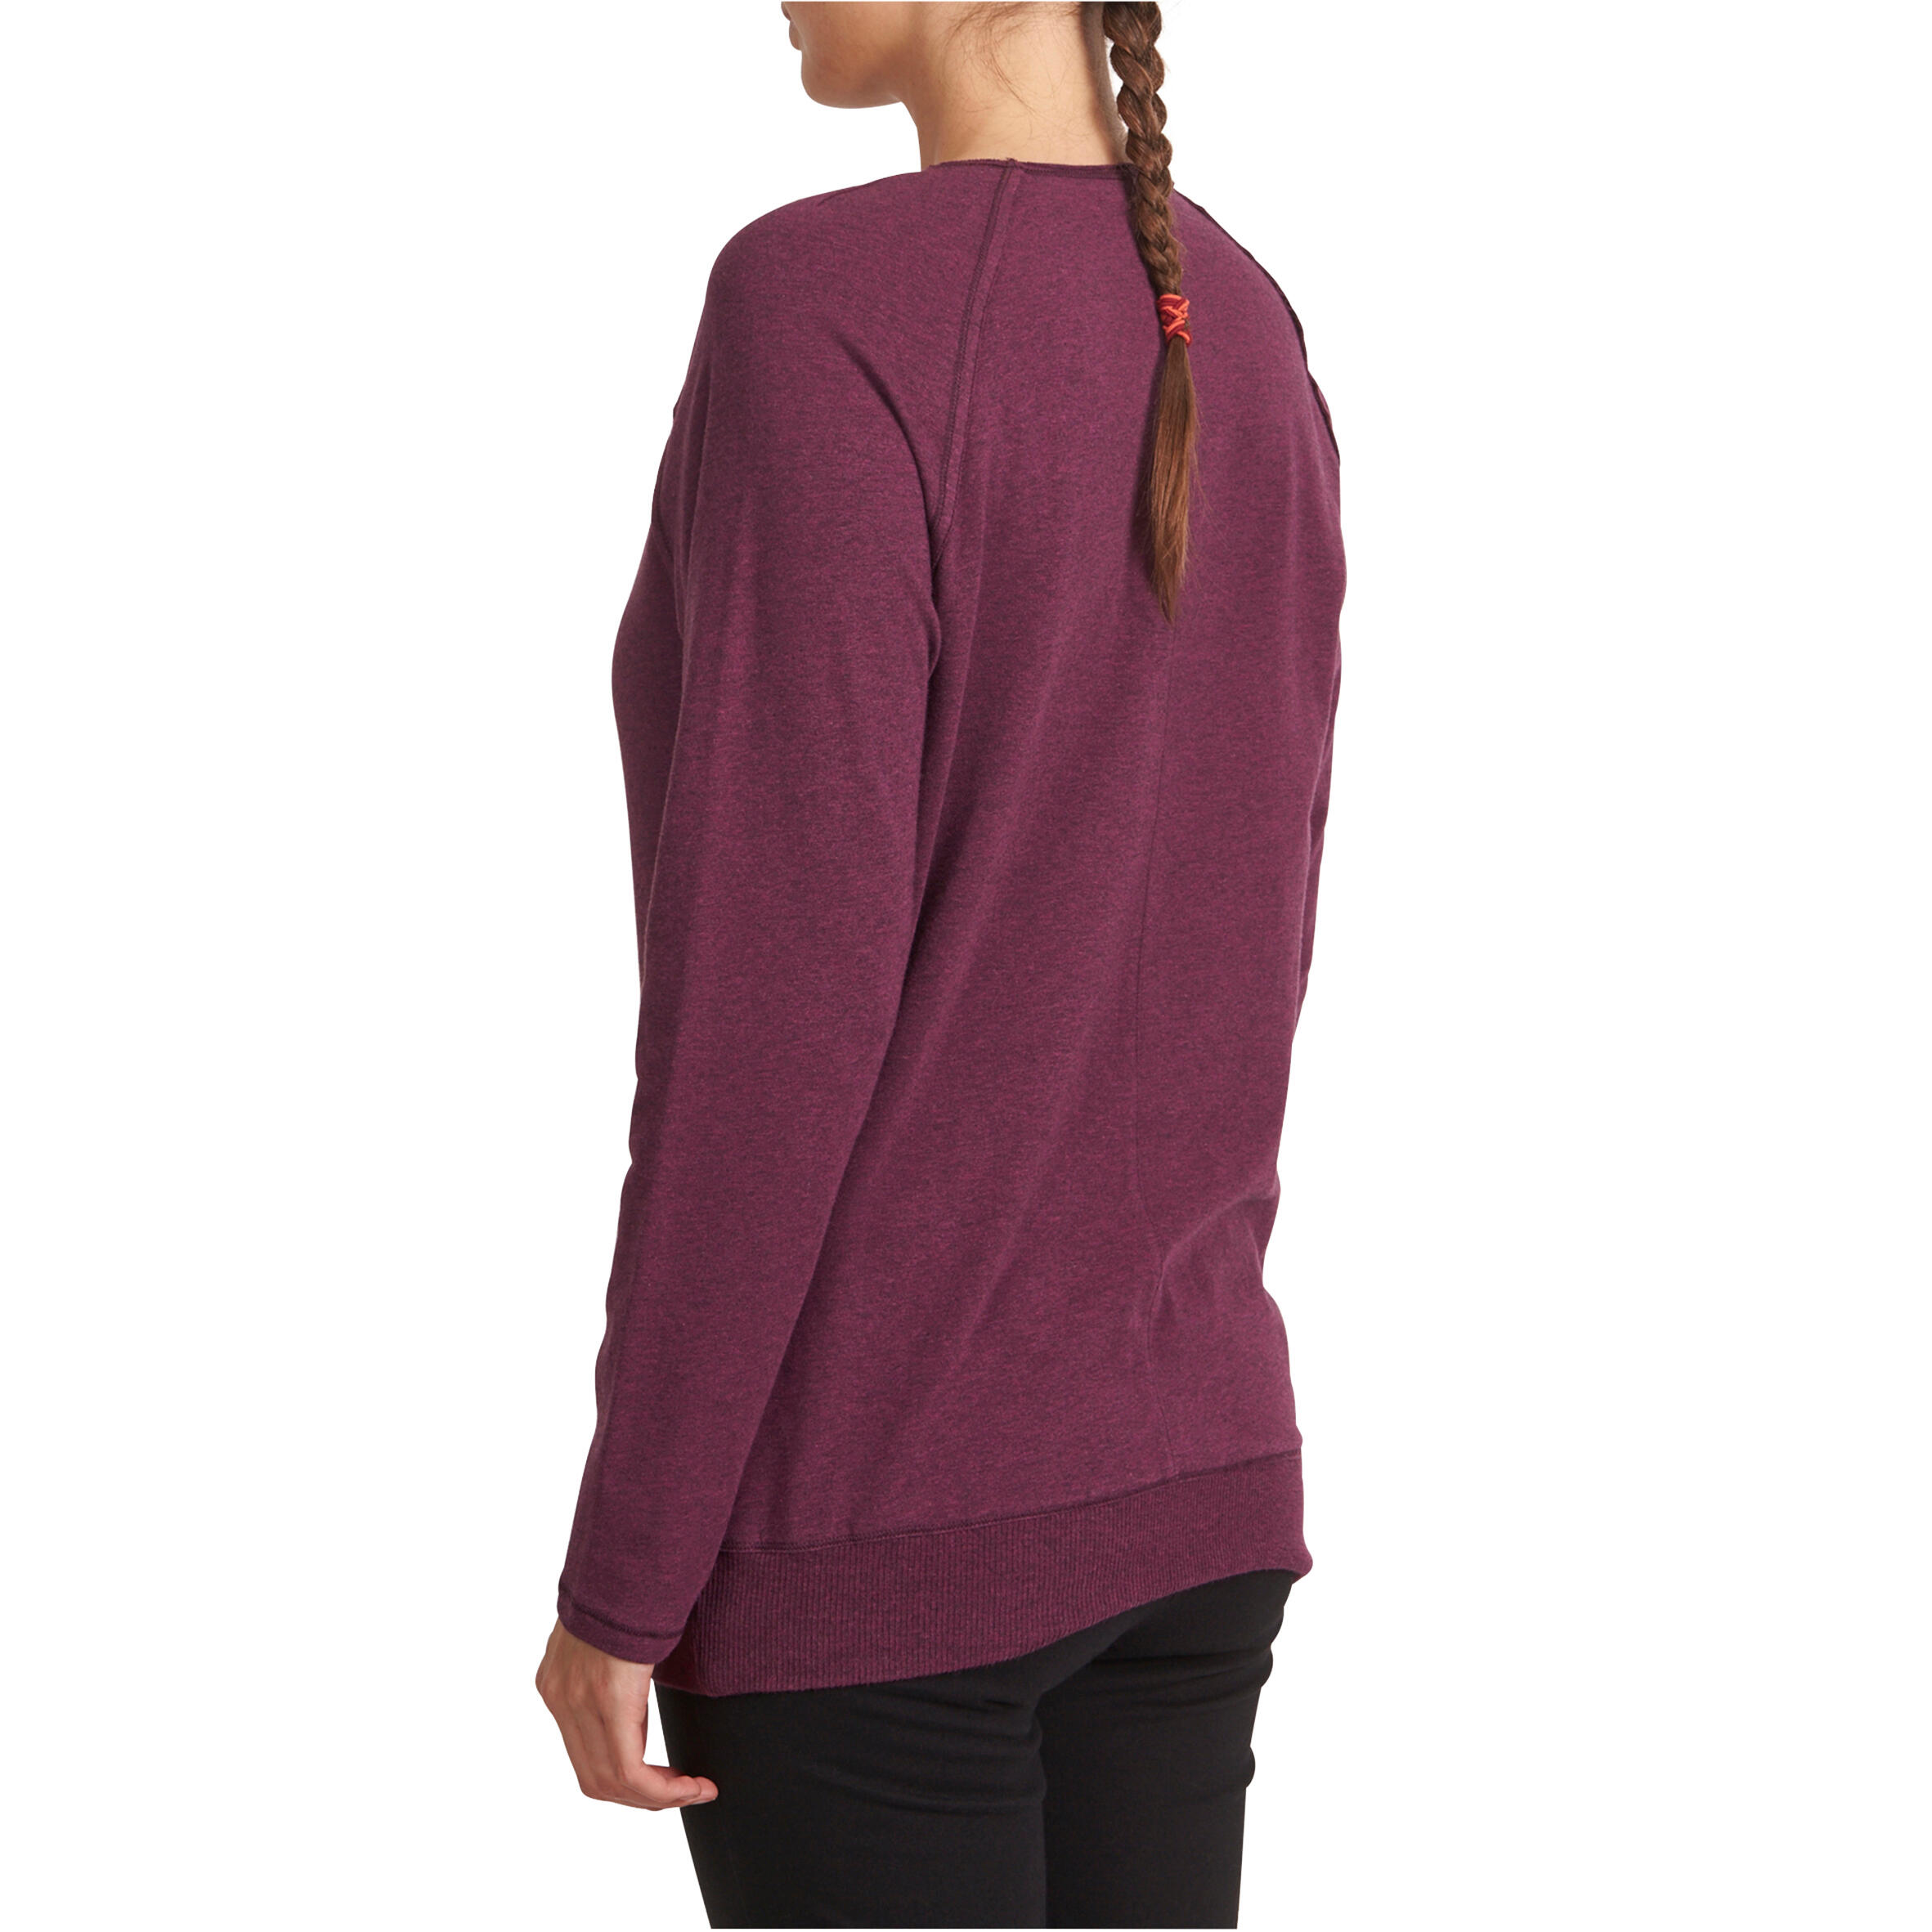 Women's Organic Cotton Long-Sleeved Yoga T-Shirt - Mottled Burgundy 3/12